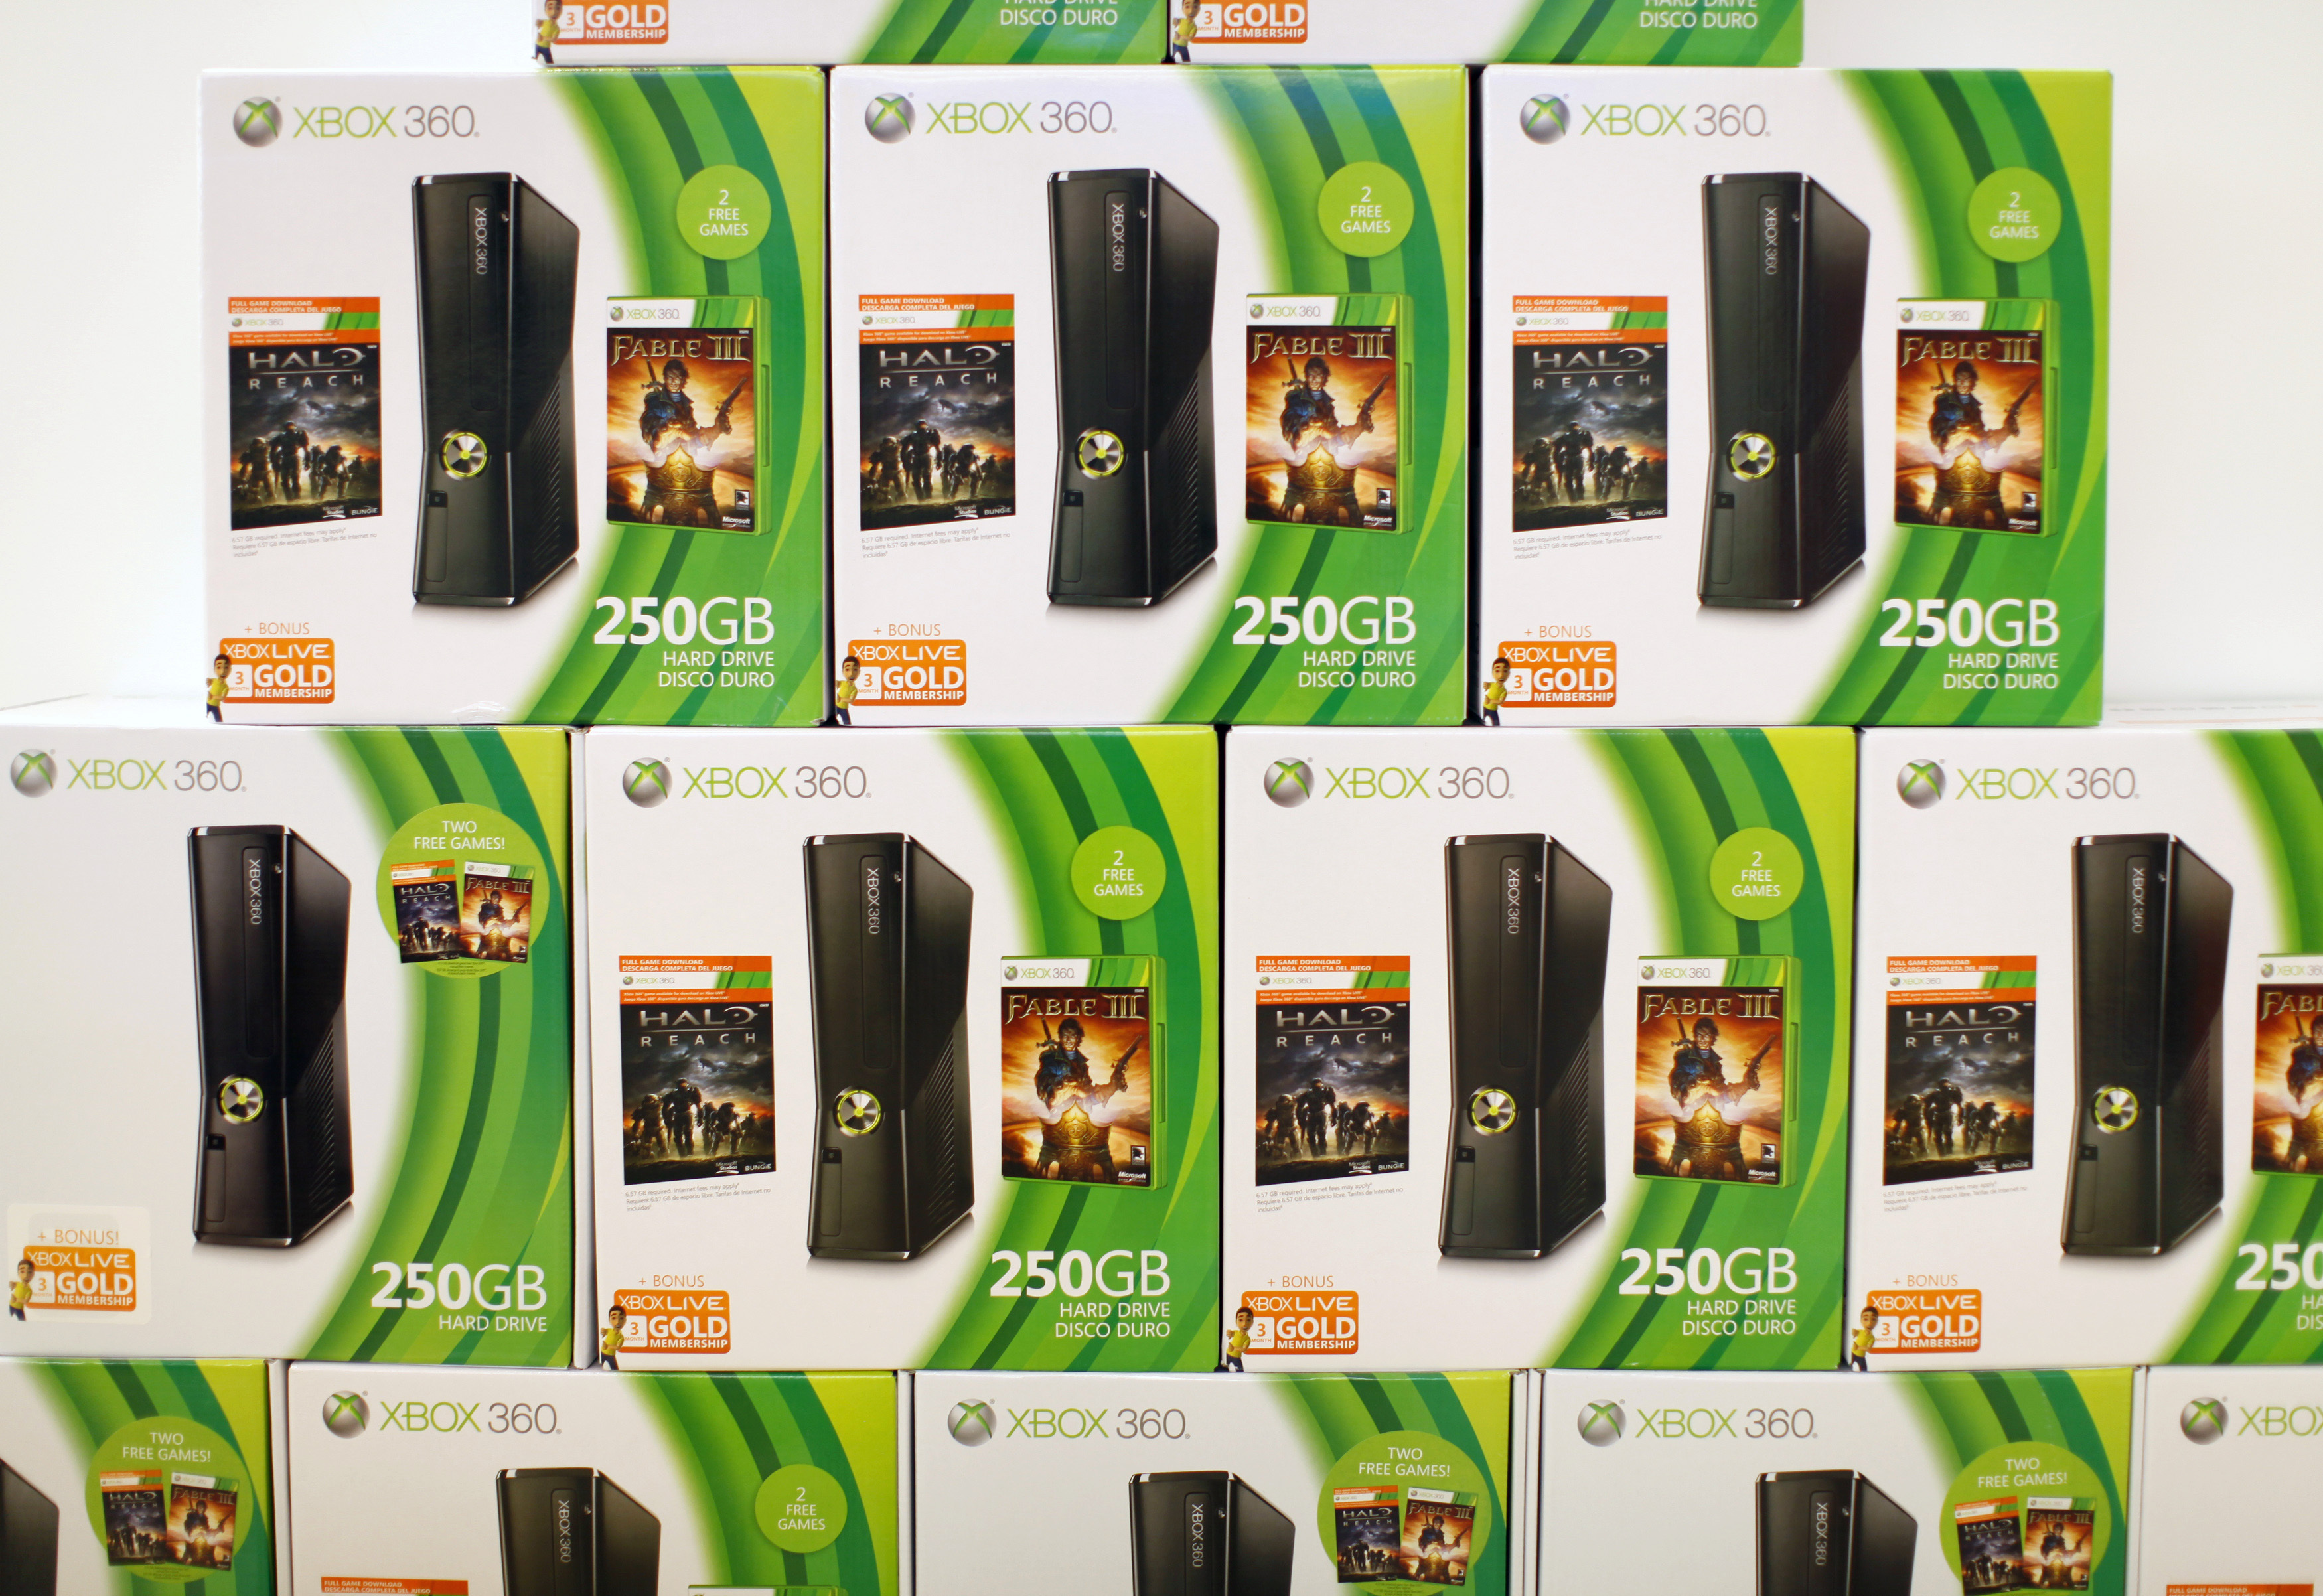 G I udlandet Flock Microsoft to shut Xbox 360's online store next year | Reuters